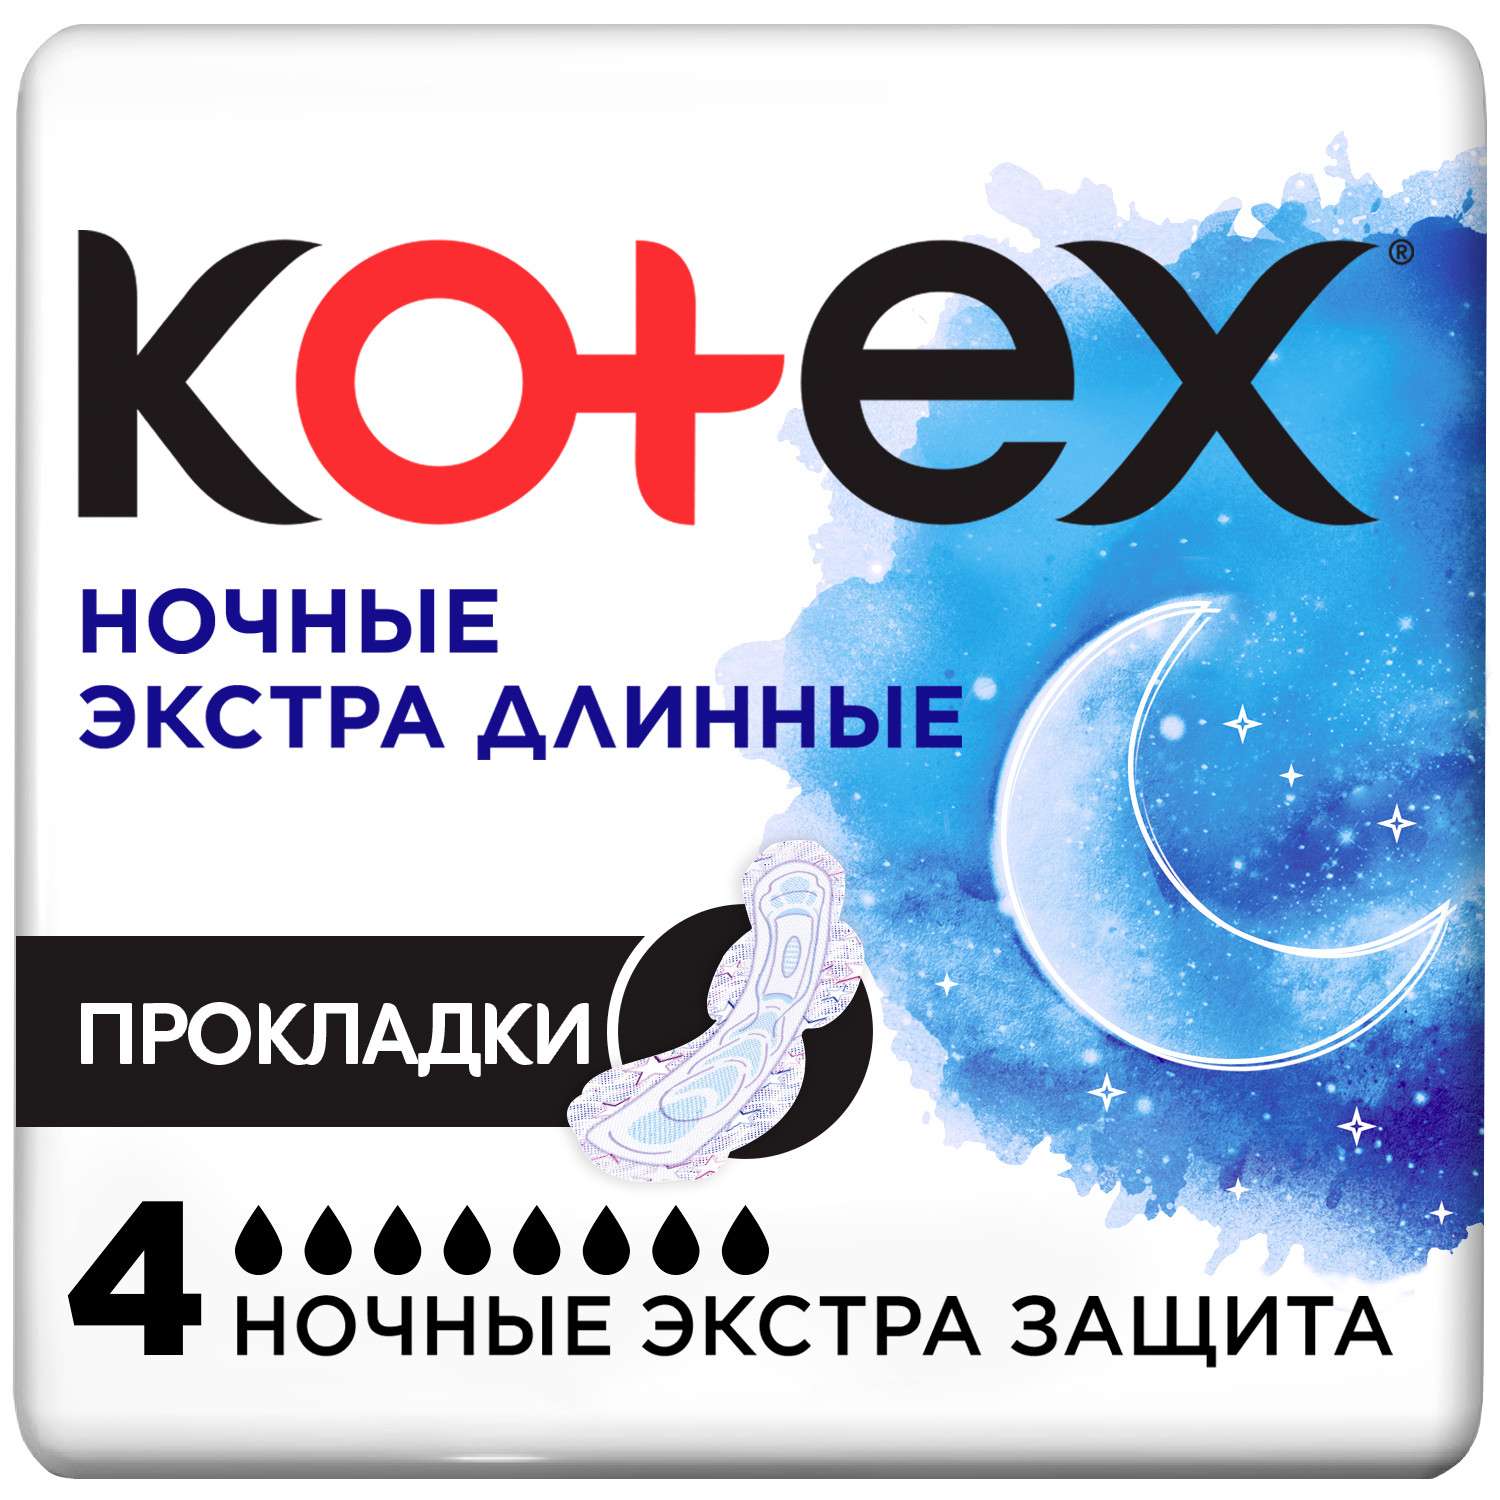 Прокладки гигиенические Kotex Ночные экстра длинные 4шт - фото 1